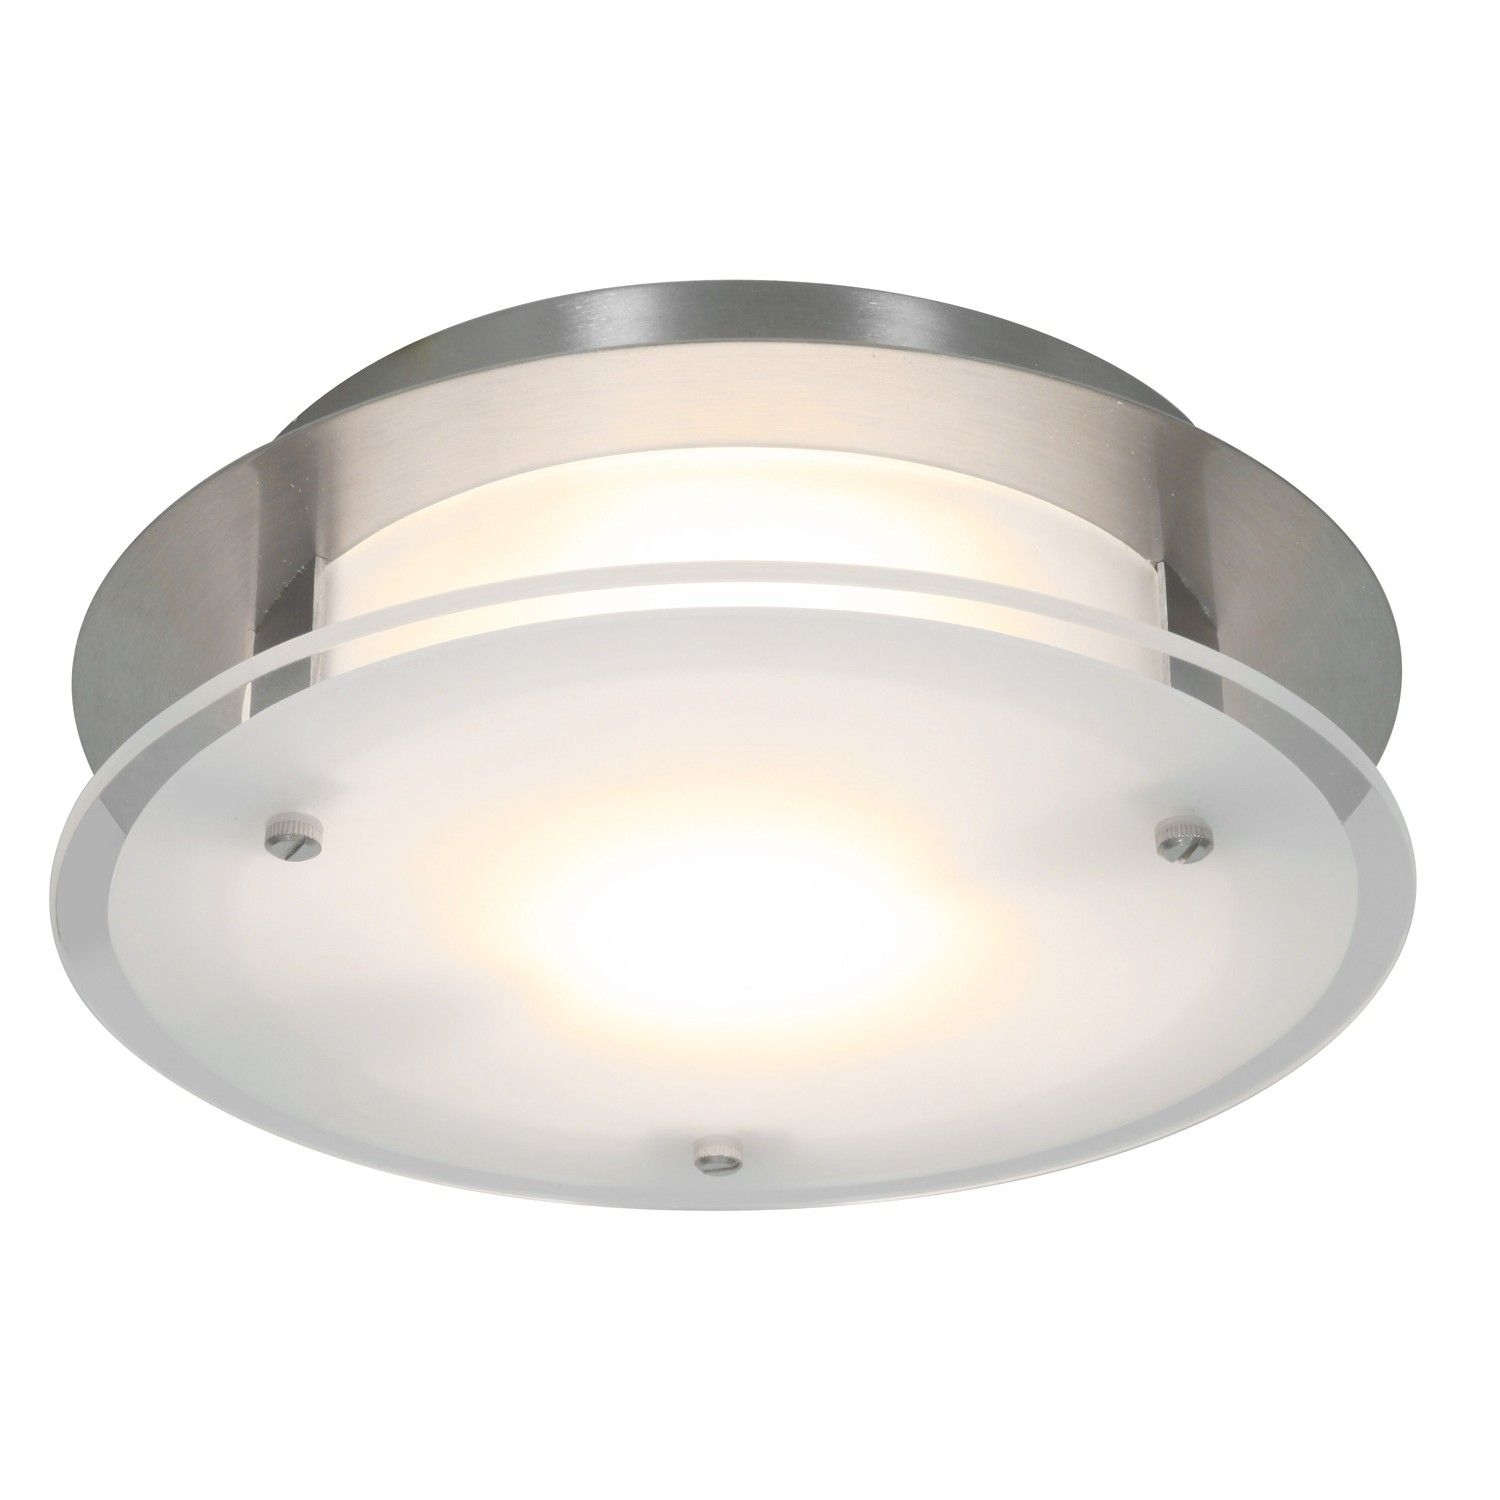 Luxury Ductless Bathroom Fan With Light Bathroom Fan Light inside measurements 1500 X 1500